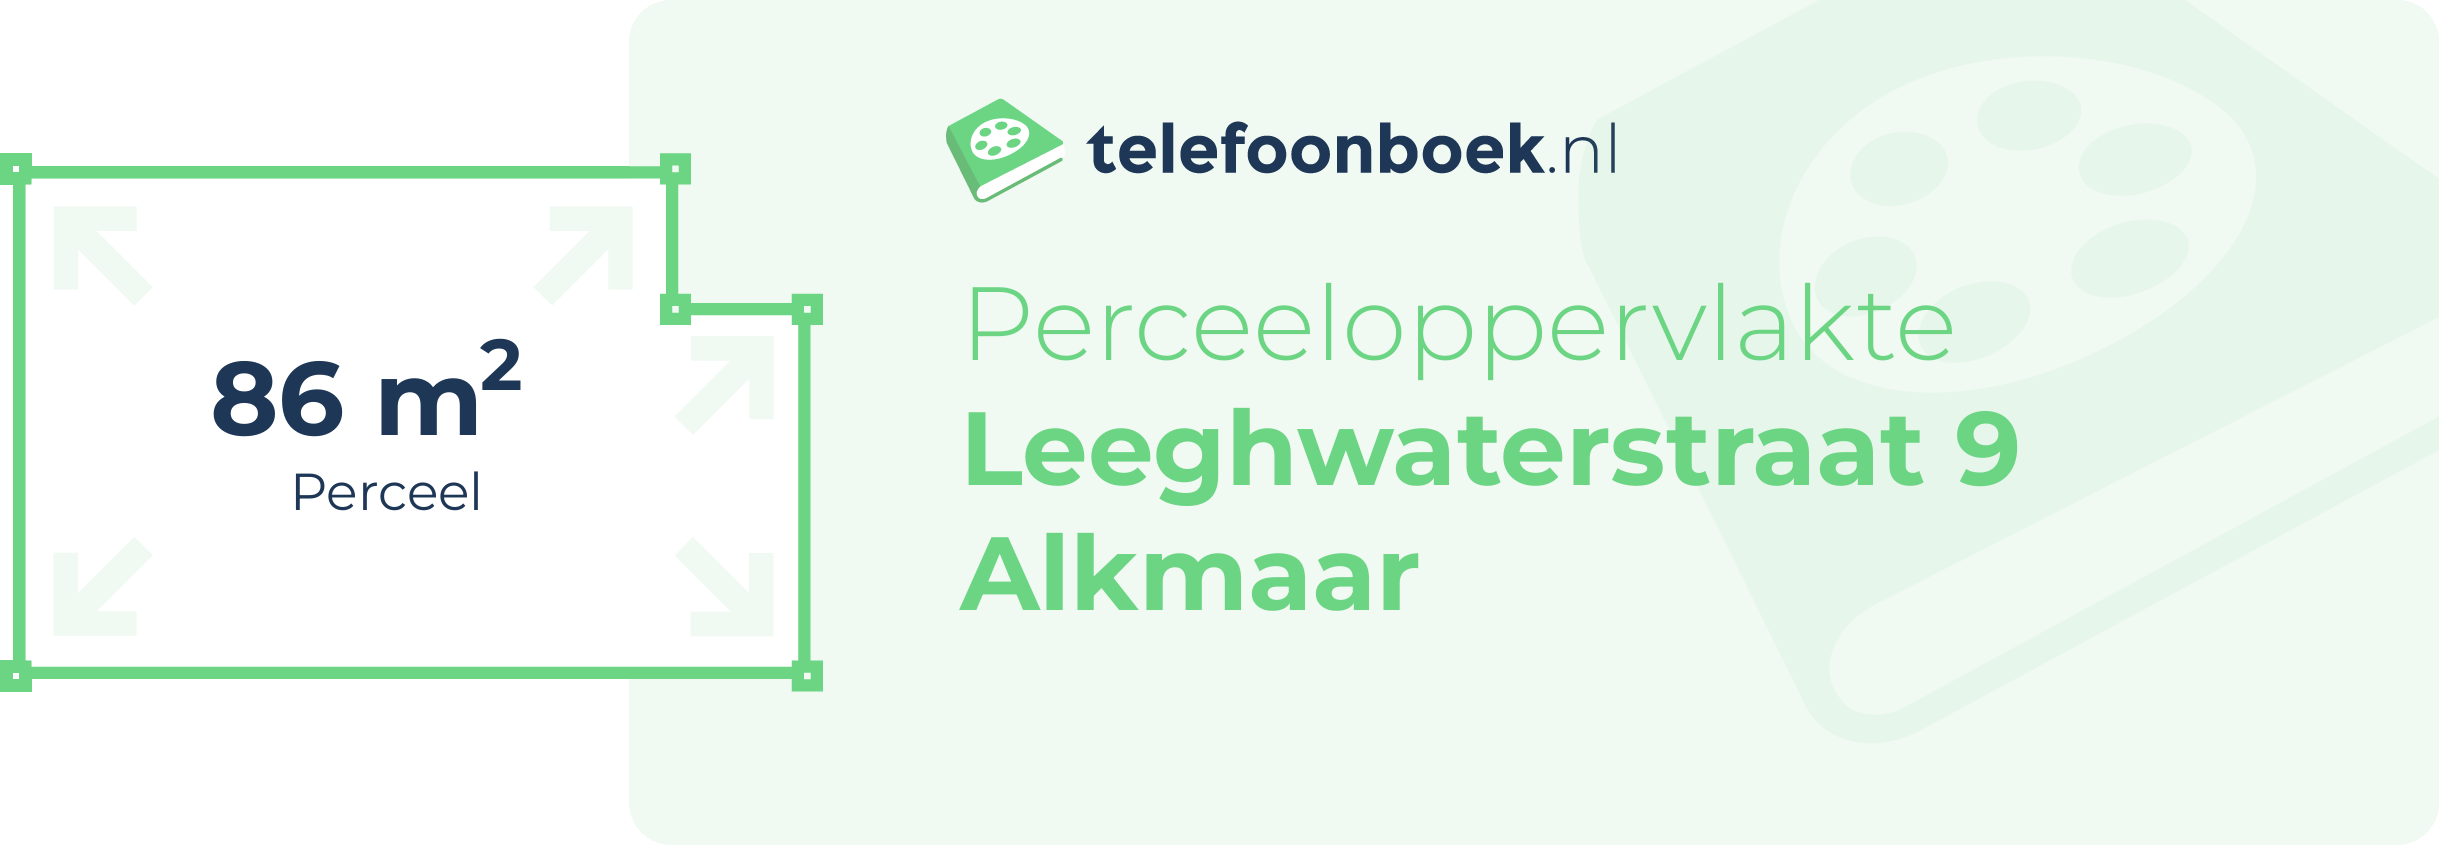 Perceeloppervlakte Leeghwaterstraat 9 Alkmaar